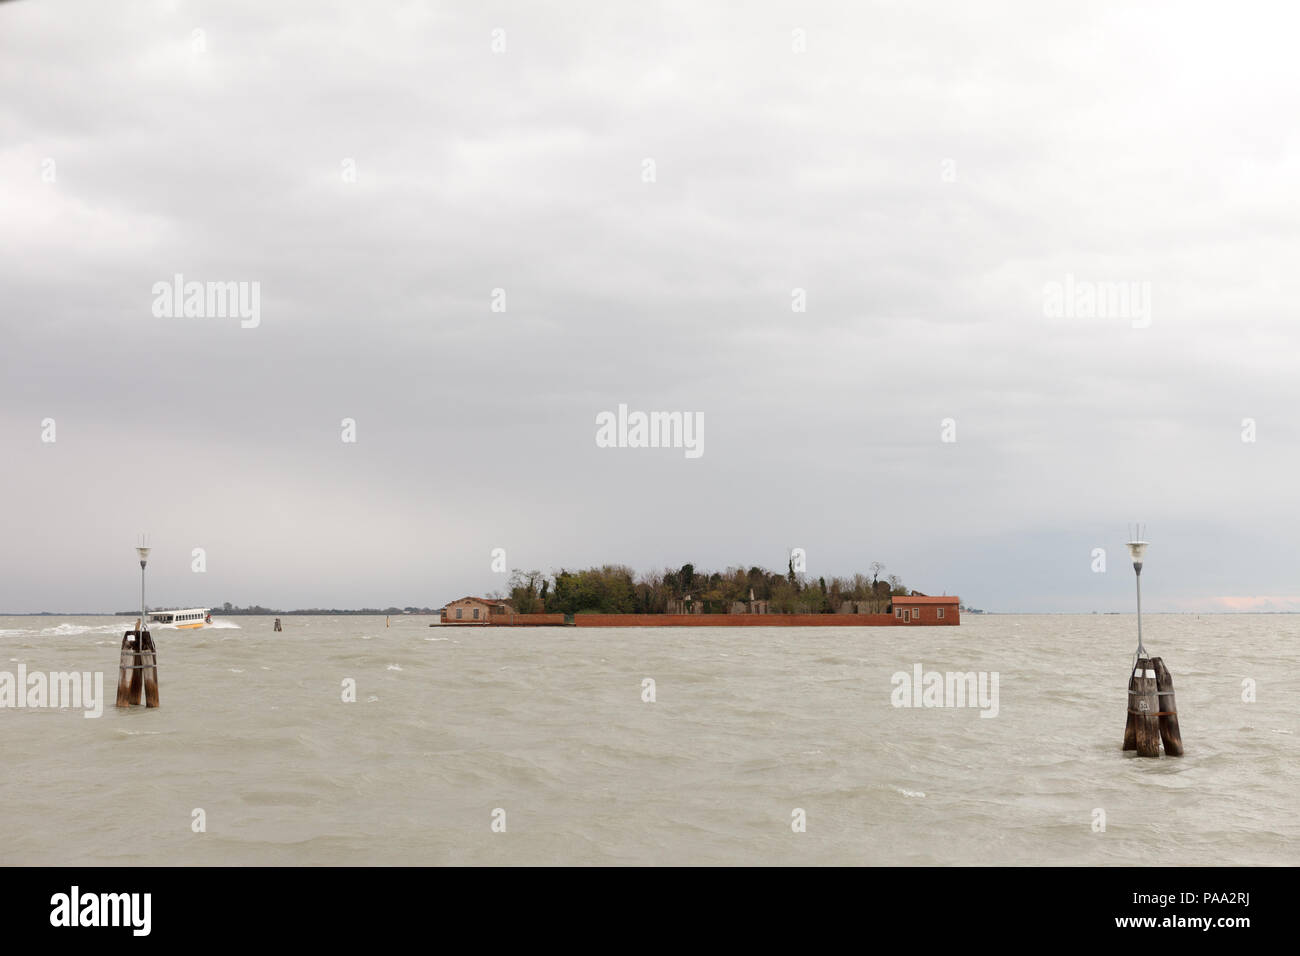 Island San Giacomo in Paludo (Isolotto di San Giacomo in Palude). Venice, Italy Stock Photo